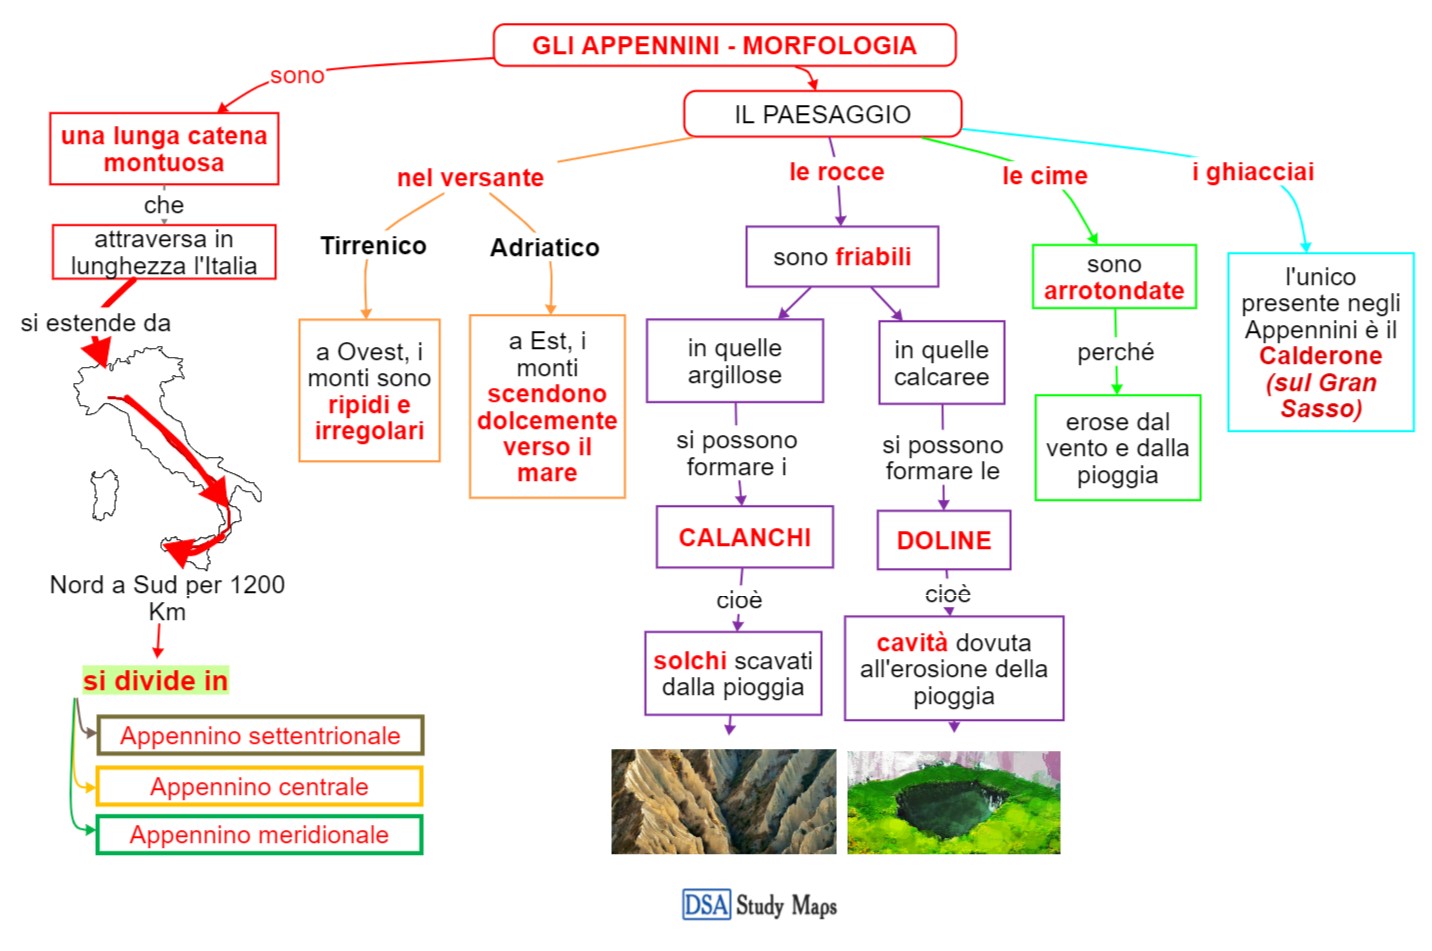 gli Appennini - morfologia